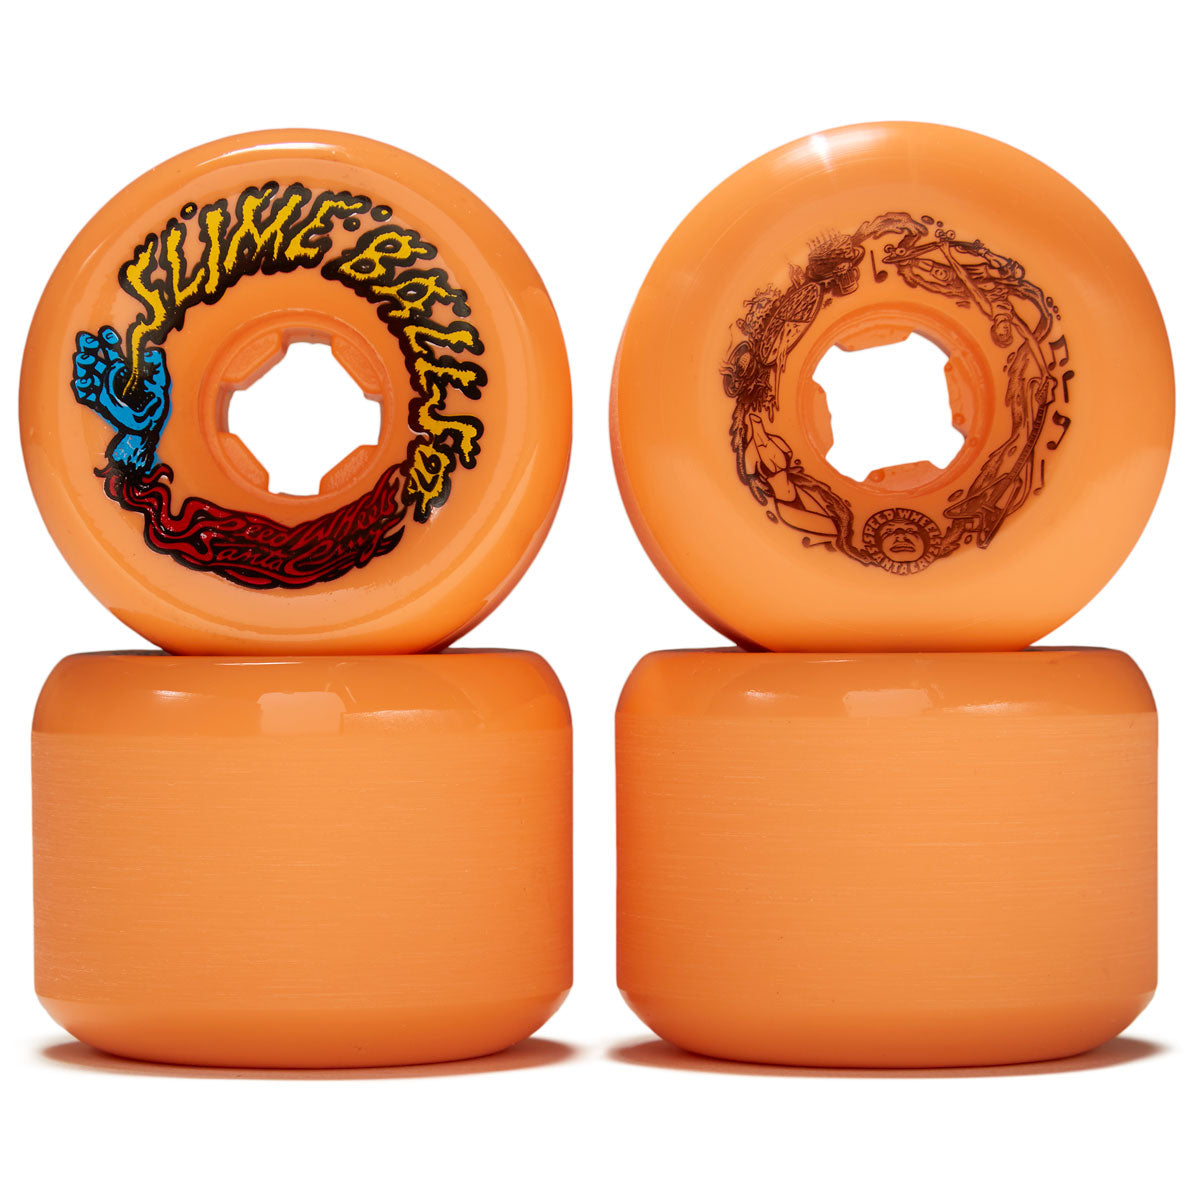 Slime Balls Vomits 97a Skateboard Wheels - Orange/Blue - 60mm image 2